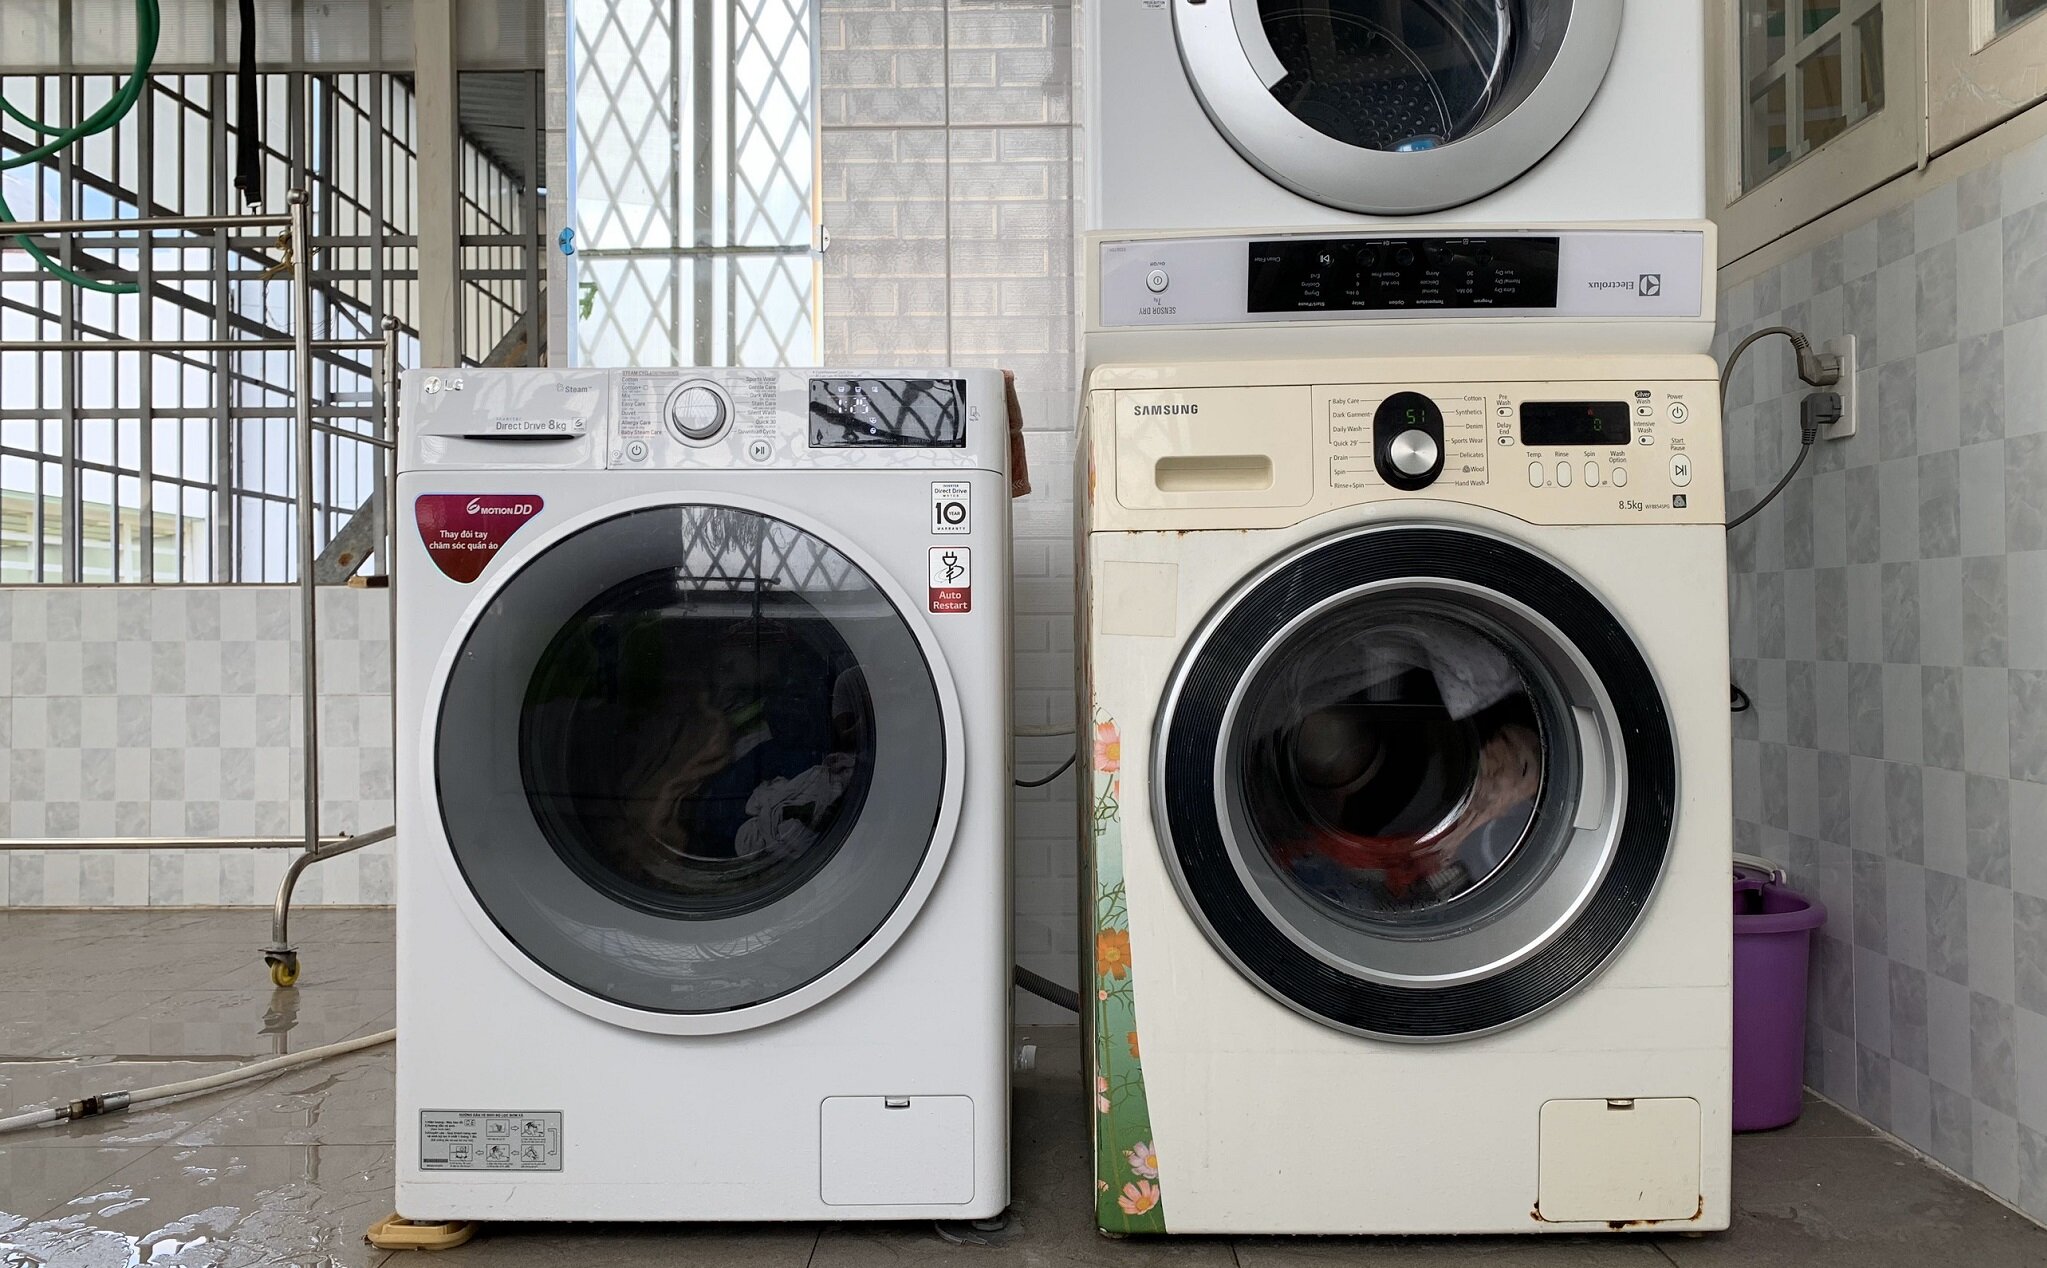 ảnh minh họa 2 máy giặt LG Inverter 9 kg FV1409S2W và FV1409S4W